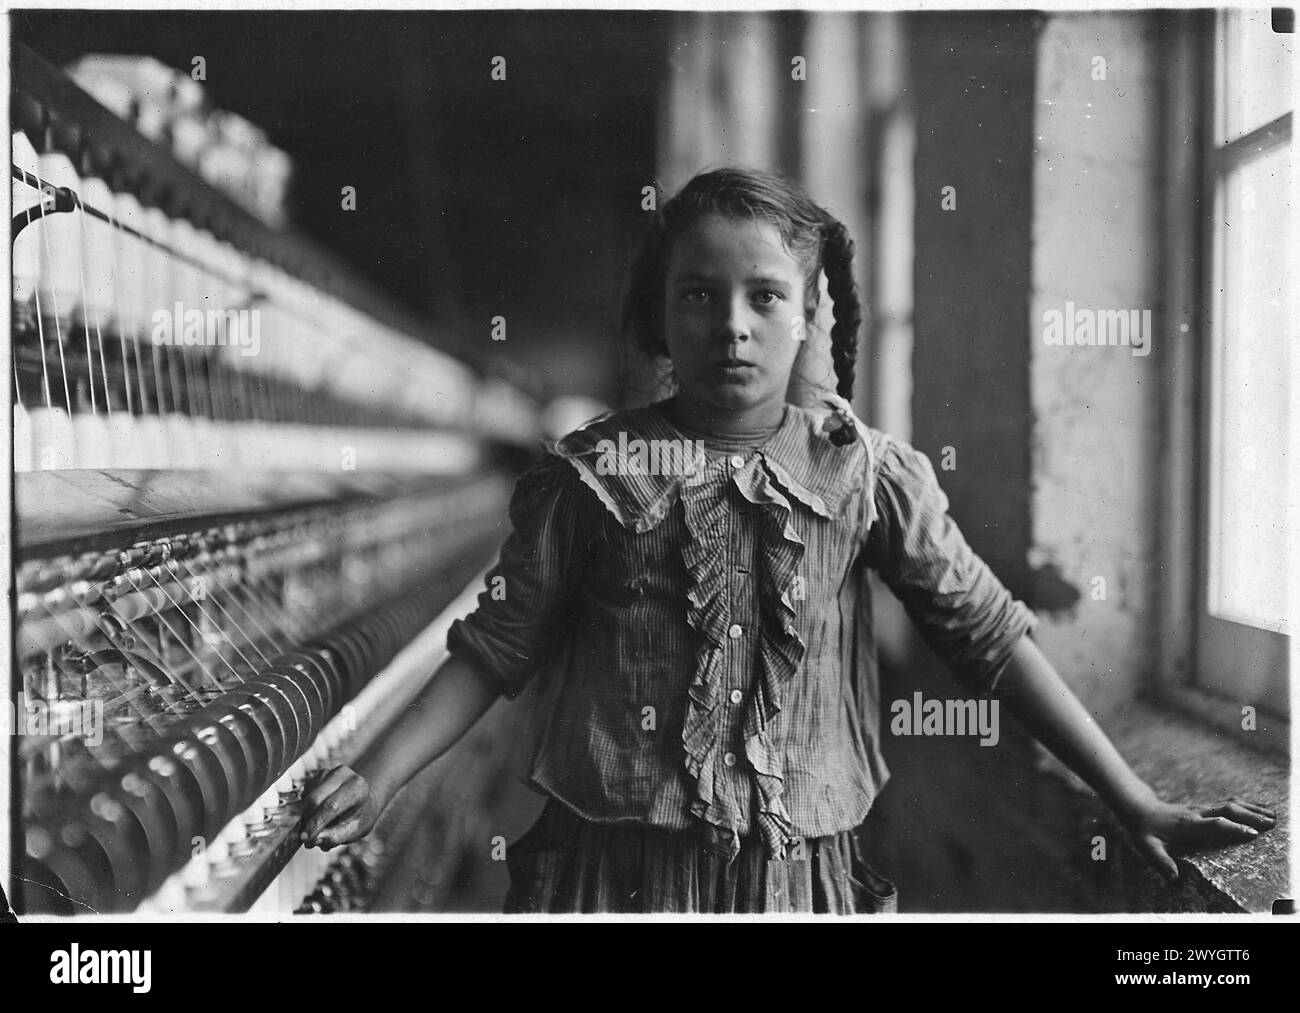 Einer der Kinderspinner in Whitnel Cotton Mill. Sie war 51 cm hoch. Whitnel, N. C, Dezember 1908. Vintage American Photography 1910s Untergeordnetes Arbeitsprojekt. Quelle: Lewis Hines Stockfoto